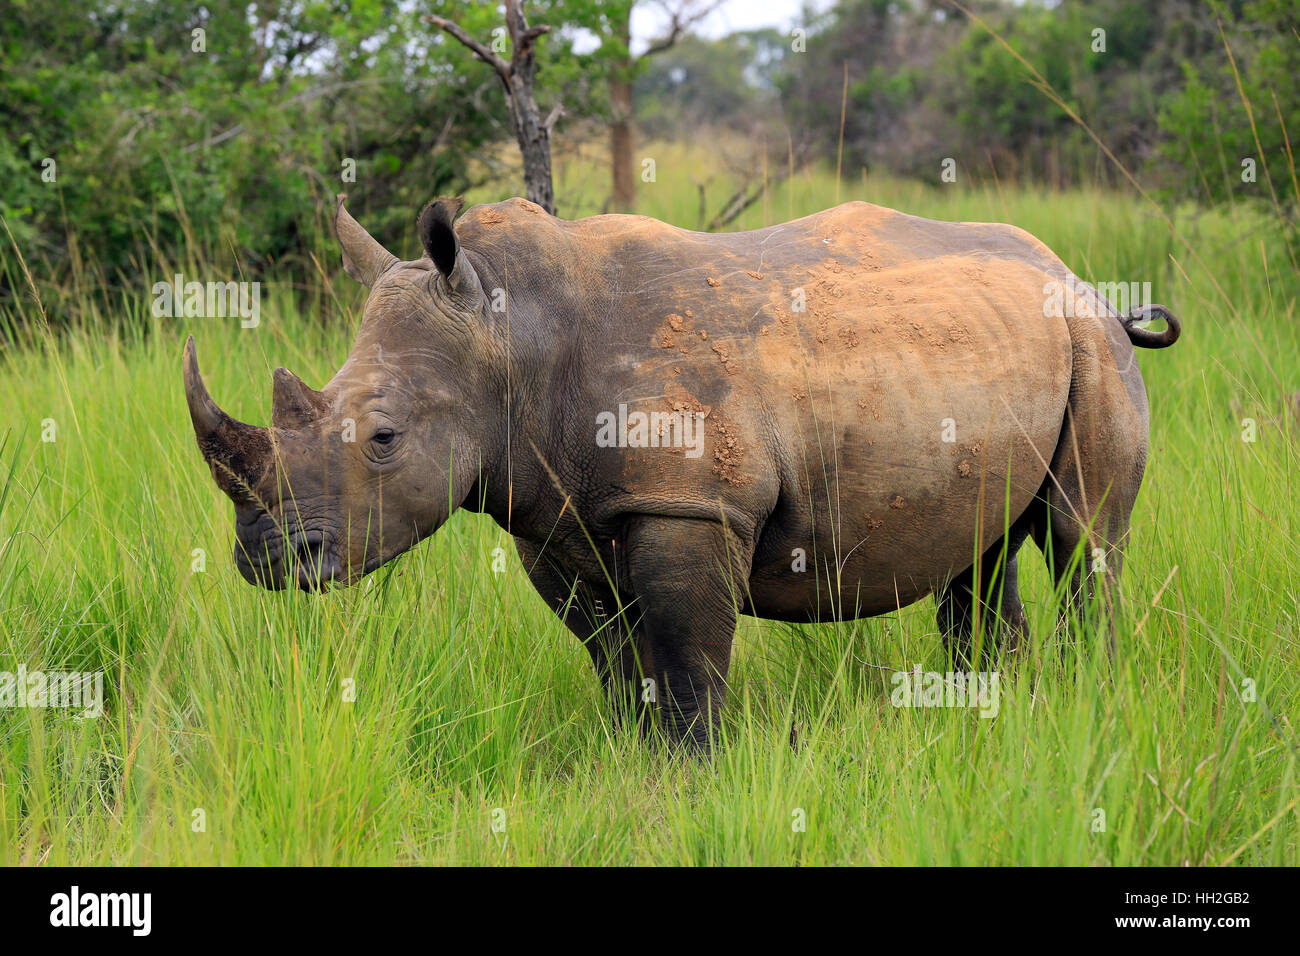 White Rhino (Ceratotherium simum). Rhino Trekking in Ziwa Rhino Sanctuary, Uganda Stock Photo